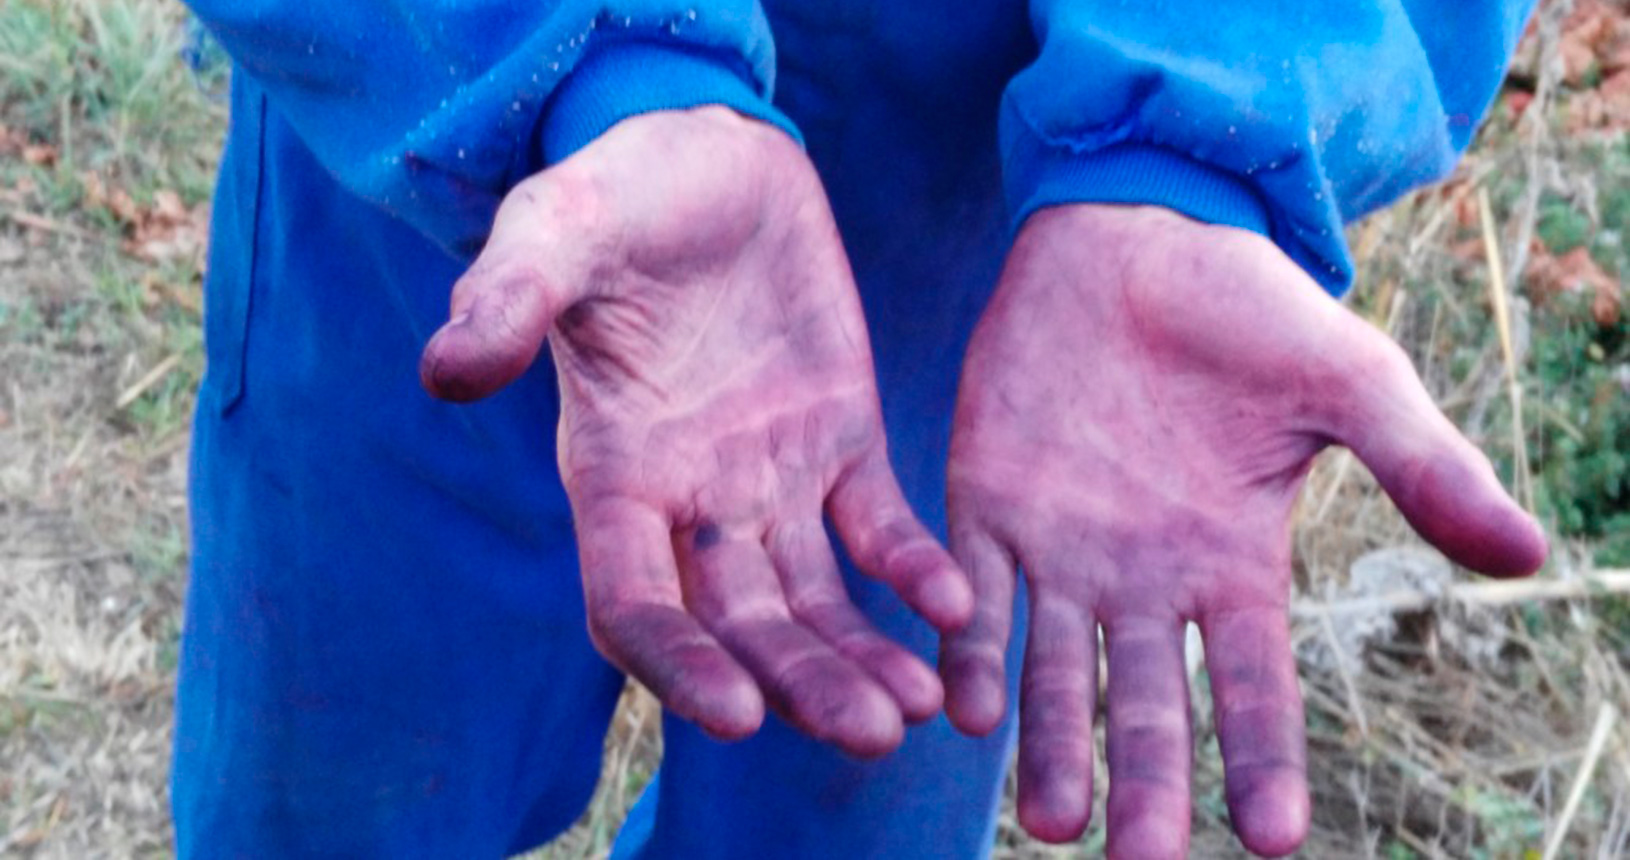 Winegrower's hands